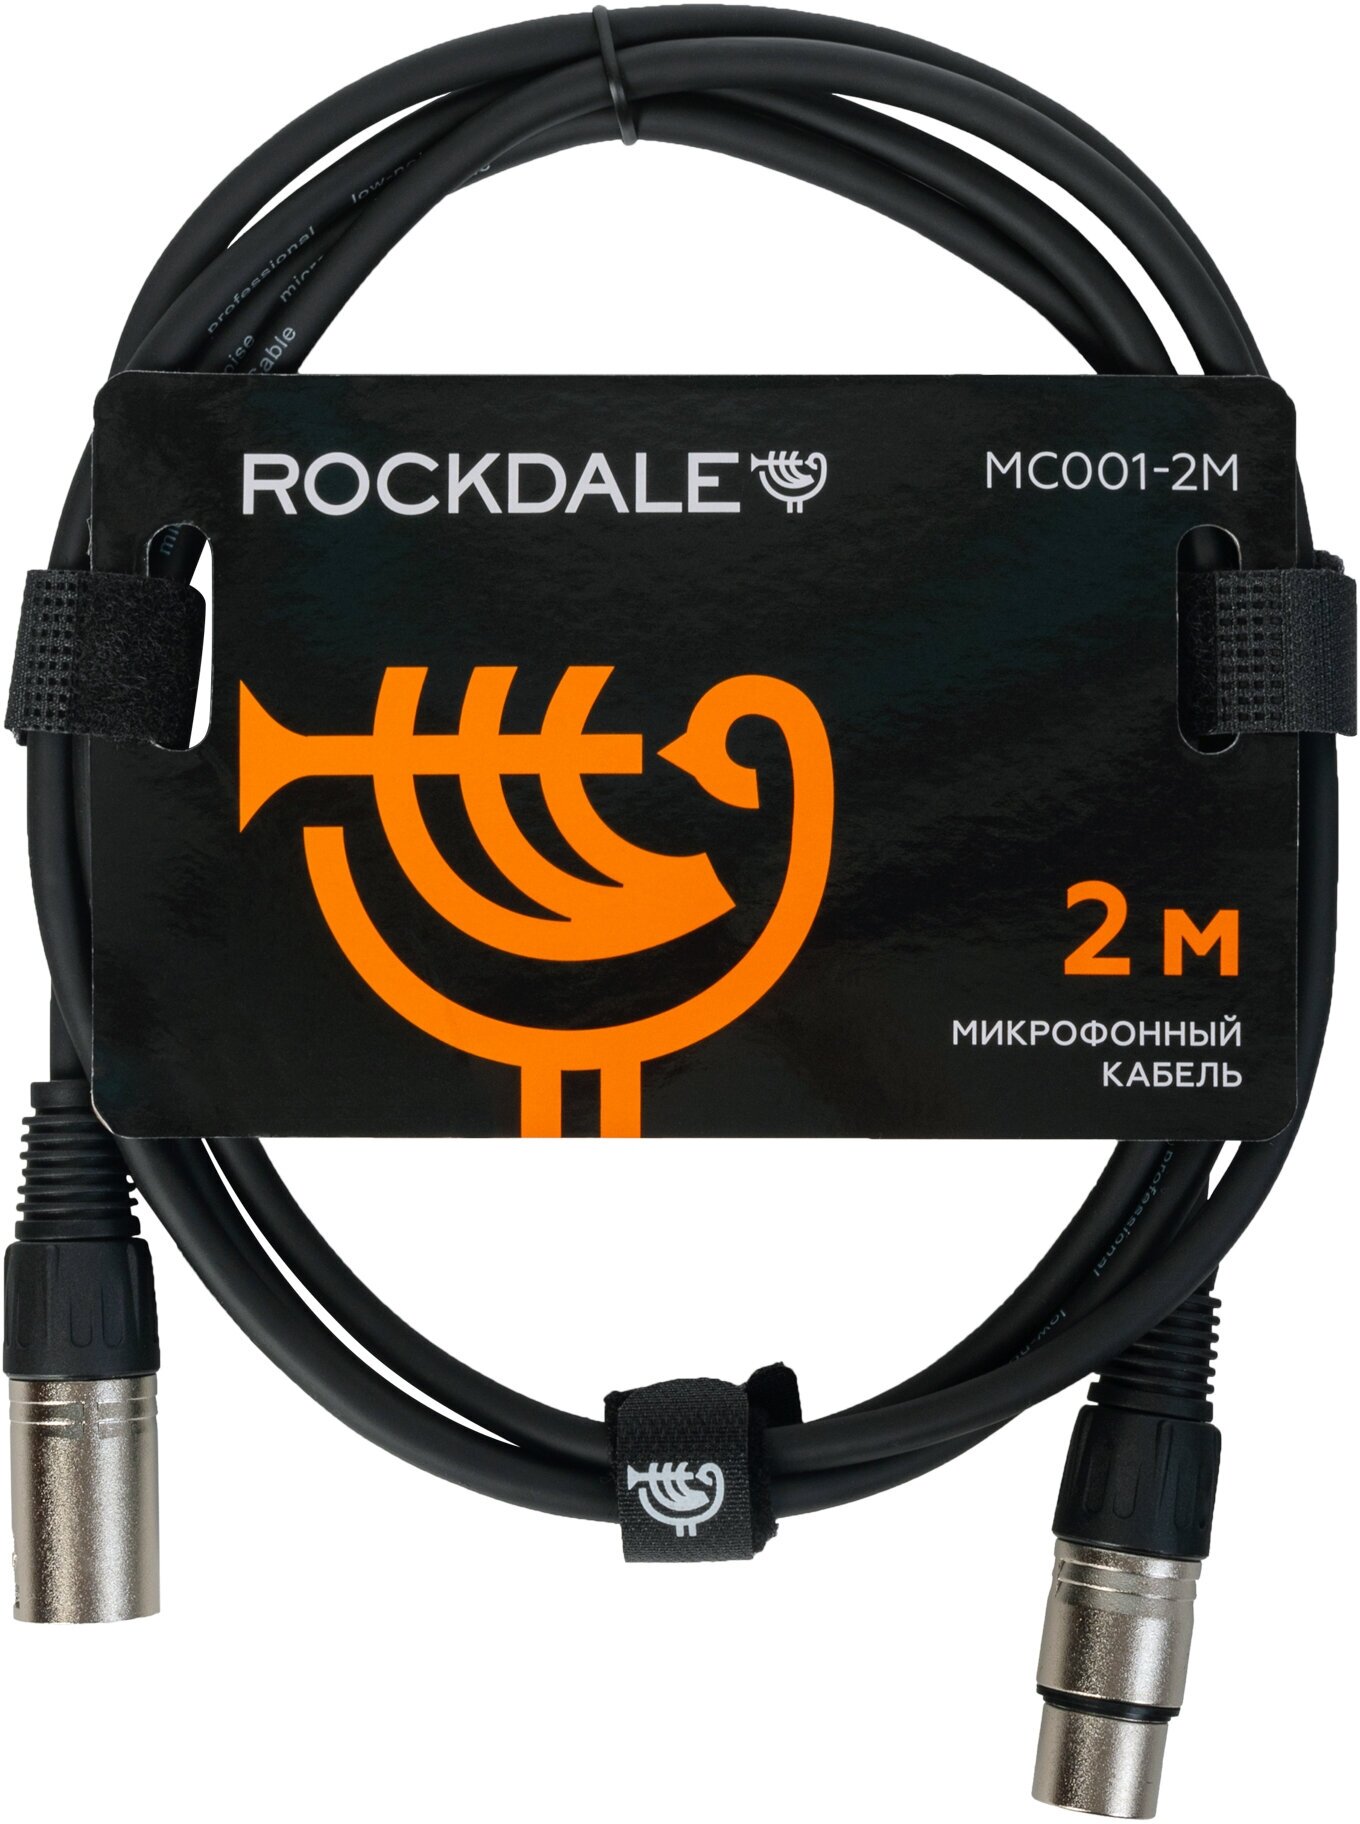 ROCKDALE MC001-2M готовый микрофонный кабель разъемы XLR длина 2м